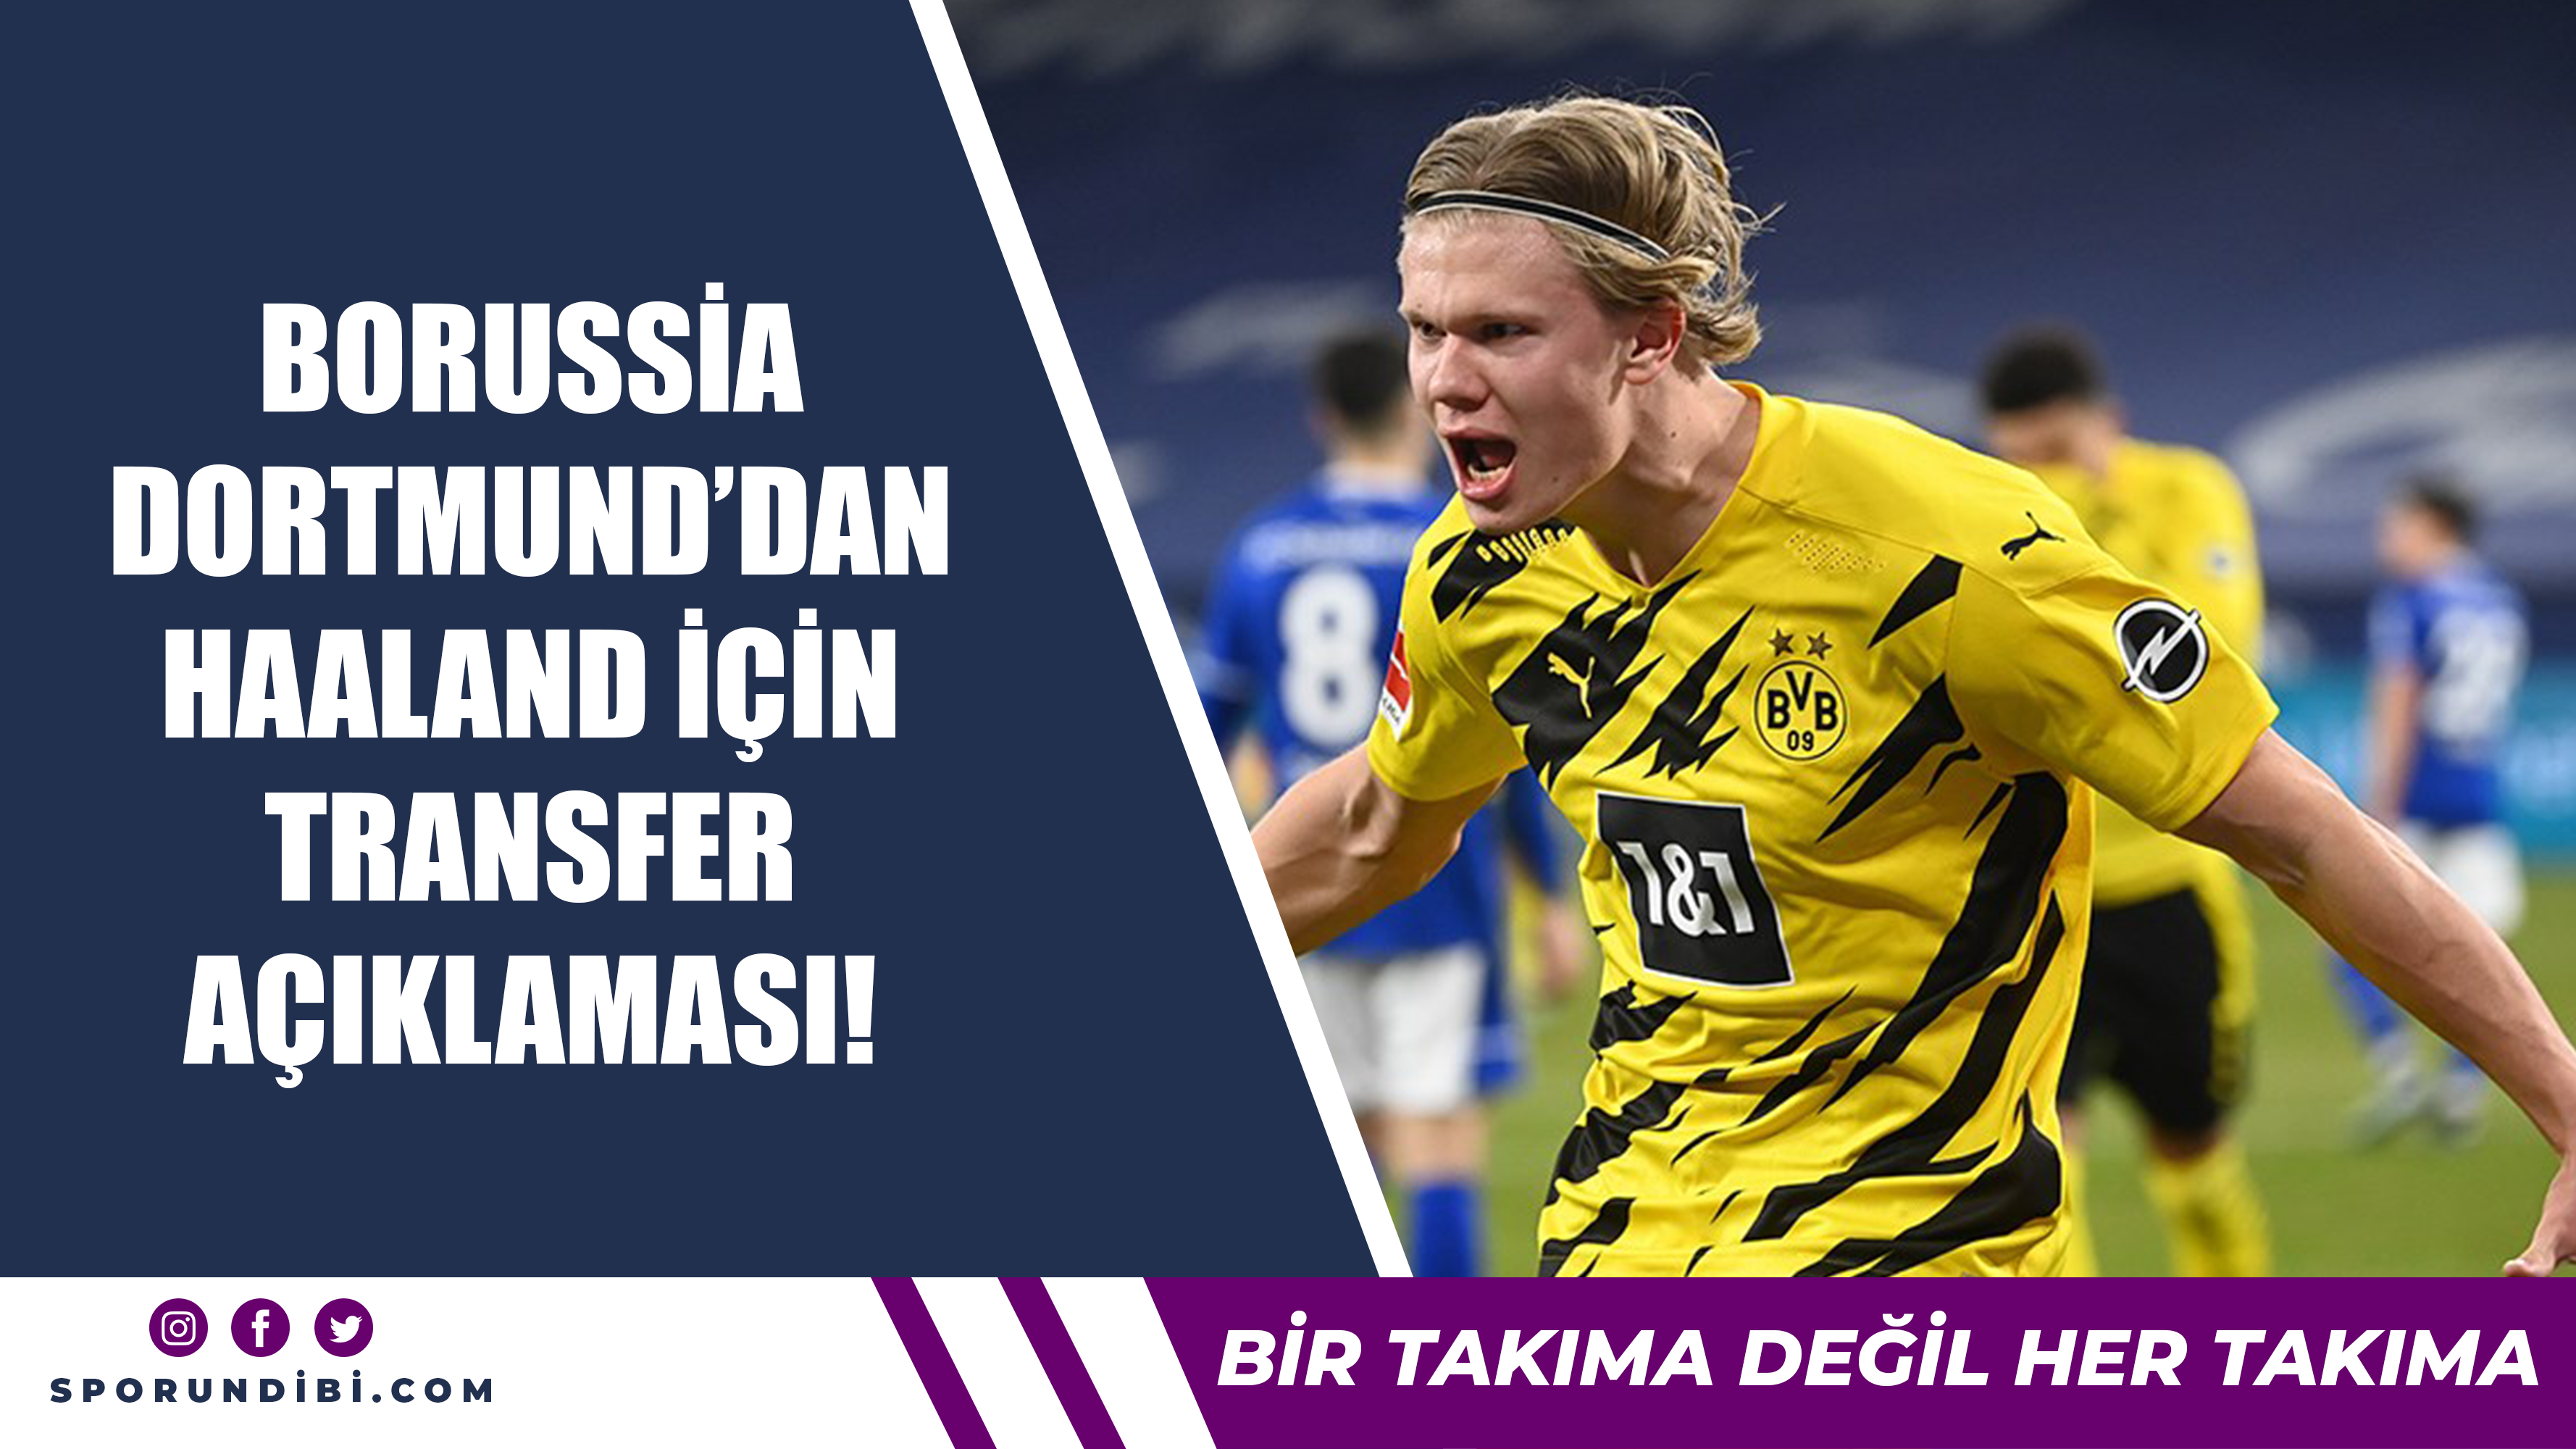 Borussia Dortmund'dan Haaland için transfer açıklaması!